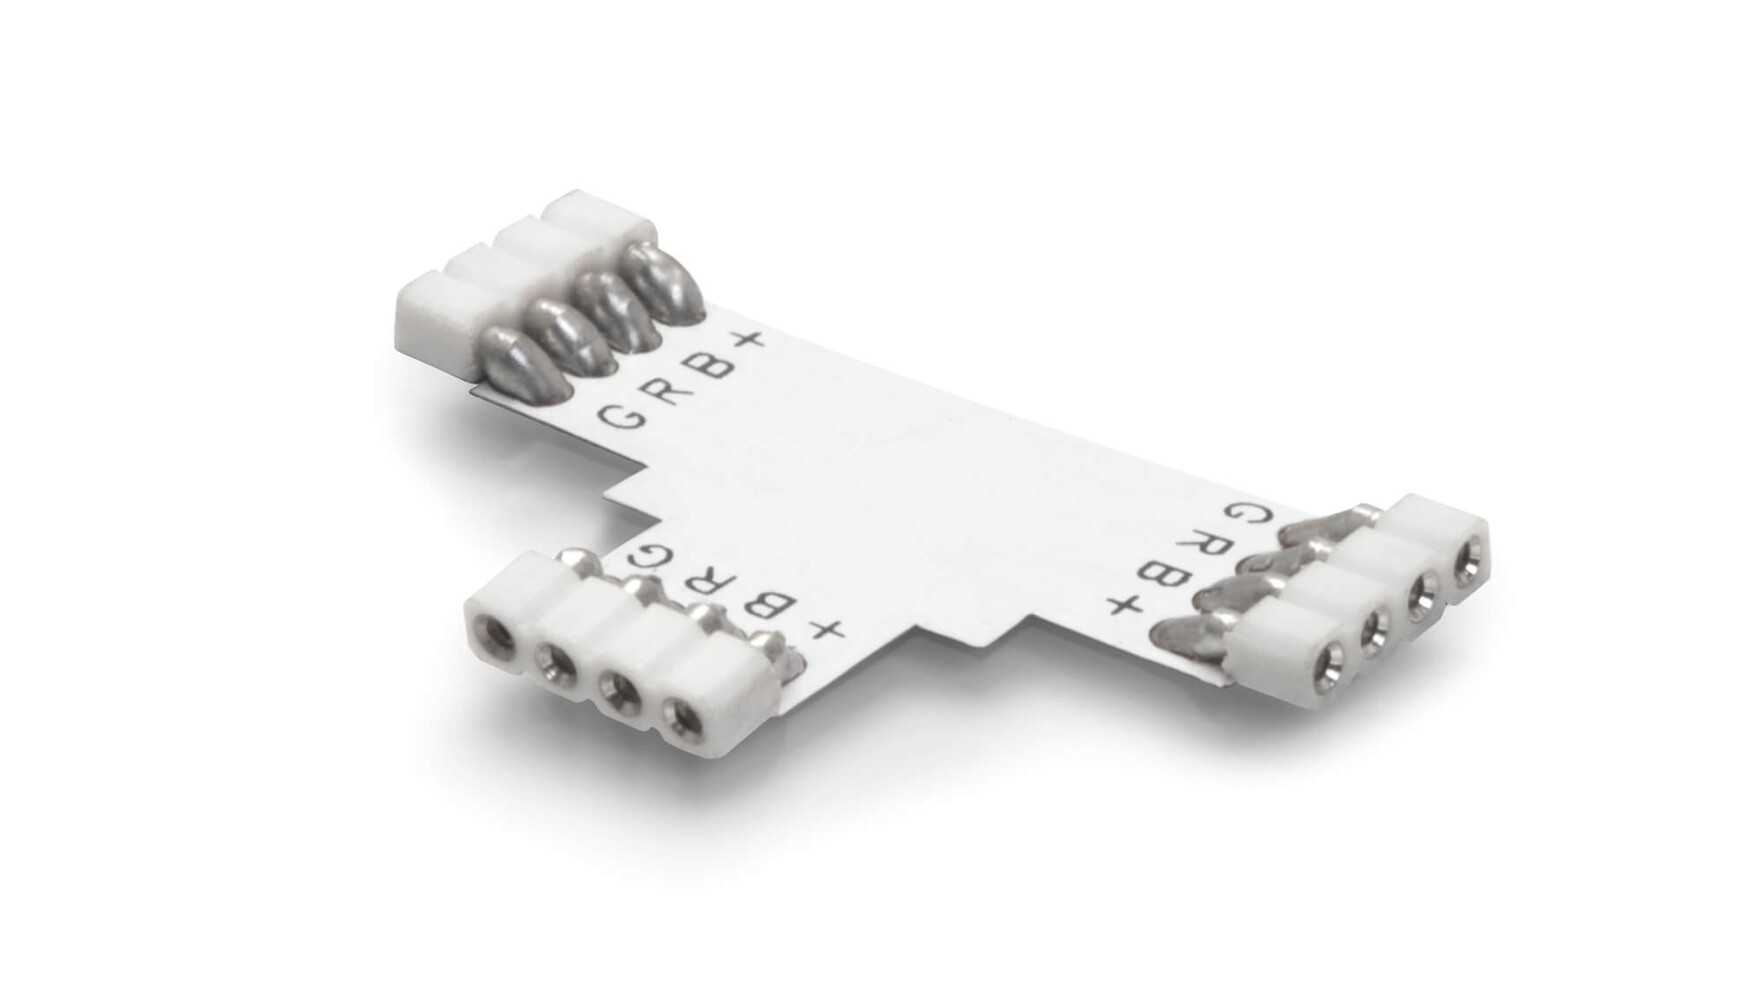 Weißer LED Streifen Verbinder von LED Universum, inklusiv 3 Lötstifte, ideal für RGB LED Streifen